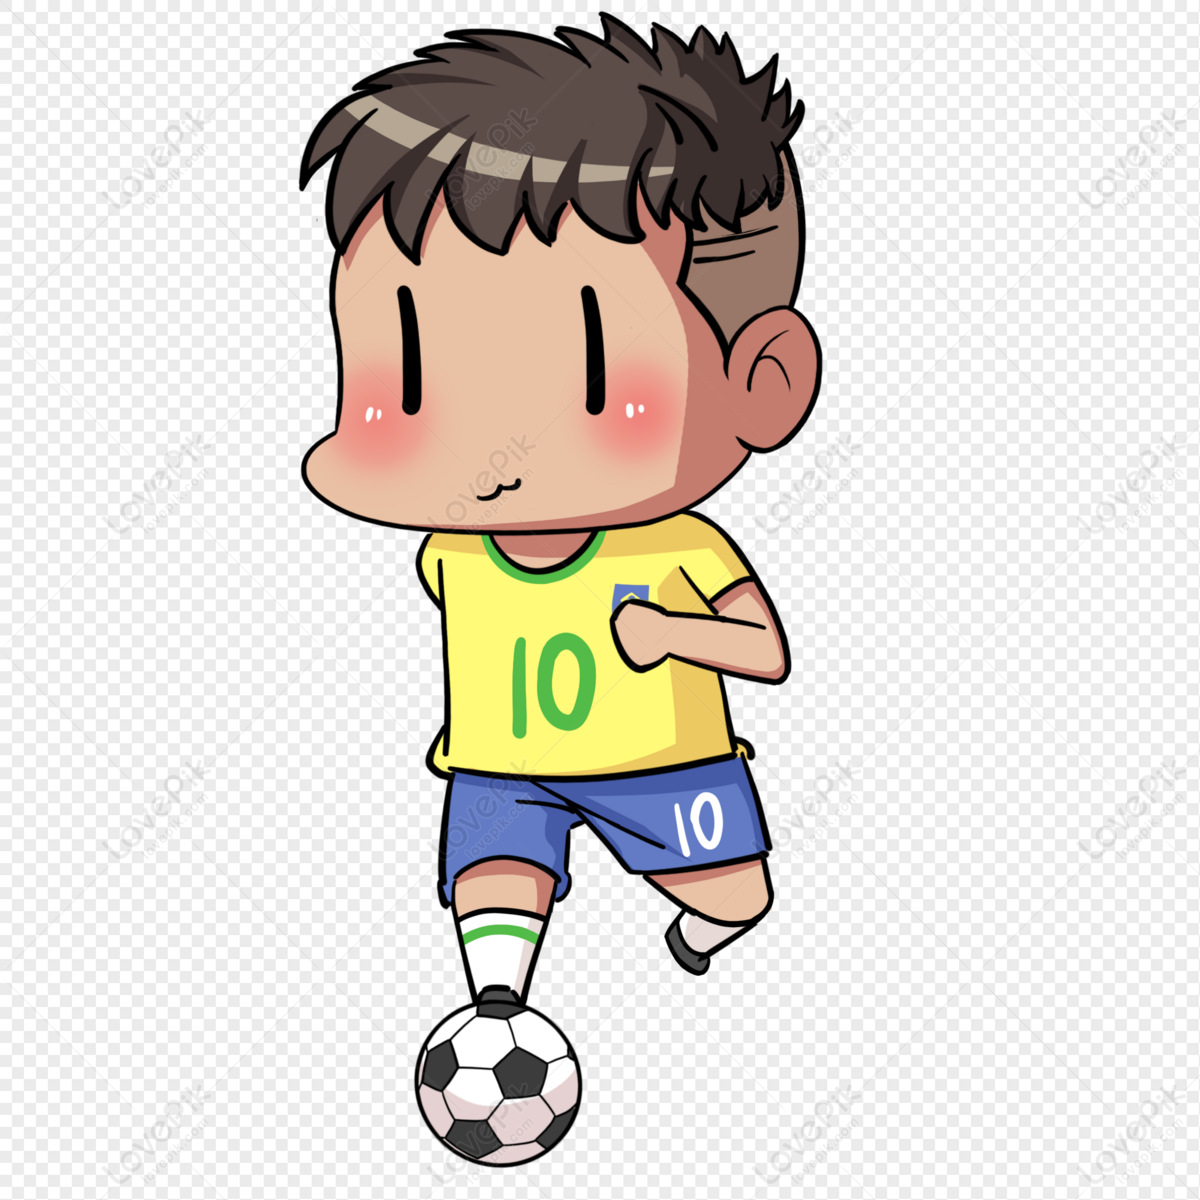 Cầu thủ số 10 của Brazil: Một trong những cầu thủ thuộc hàng huyền thoại của bóng đá thế giới, số 10 của Brazil luôn là niềm tự hào của người hâm mộ. Hãy khám phá về cuộc đời và sự nghiệp của các danh thủ như Pele, Zico, Ronaldinho và Neymar - tất cả đều từng mặc áo số 10 của đội tuyển Brazil.